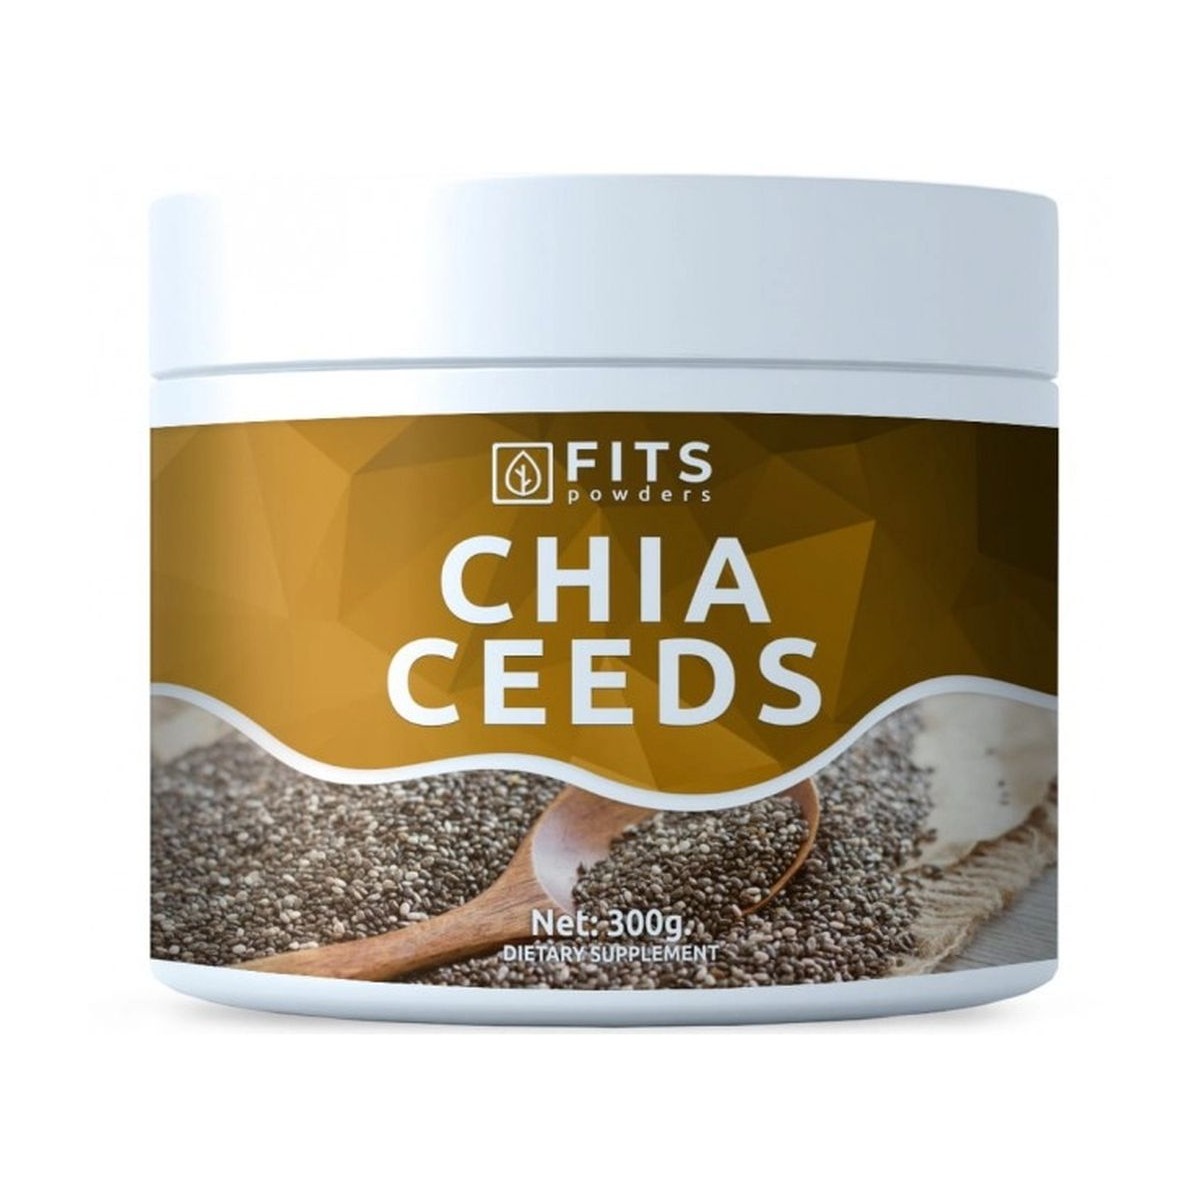 Nutricosmética - Suplementos al mejor precio: Chia Seeds 300g de FITS Supplements en Skin Thinks - 